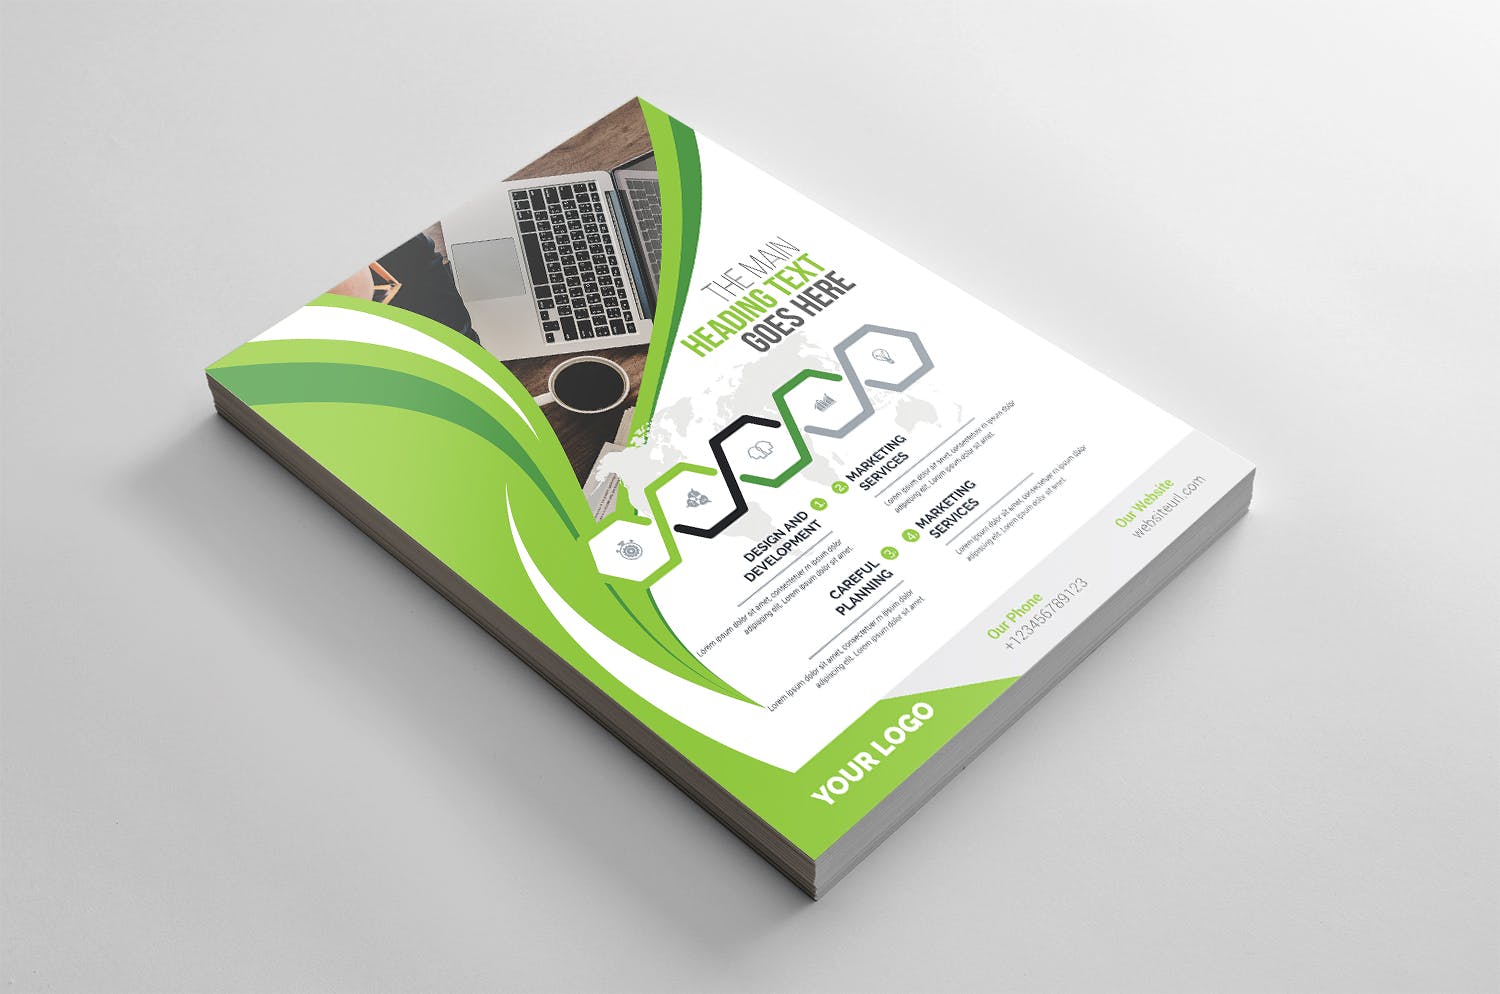 企业介绍&公司宣传商业传单设计模板 Corporate Flyer插图(2)